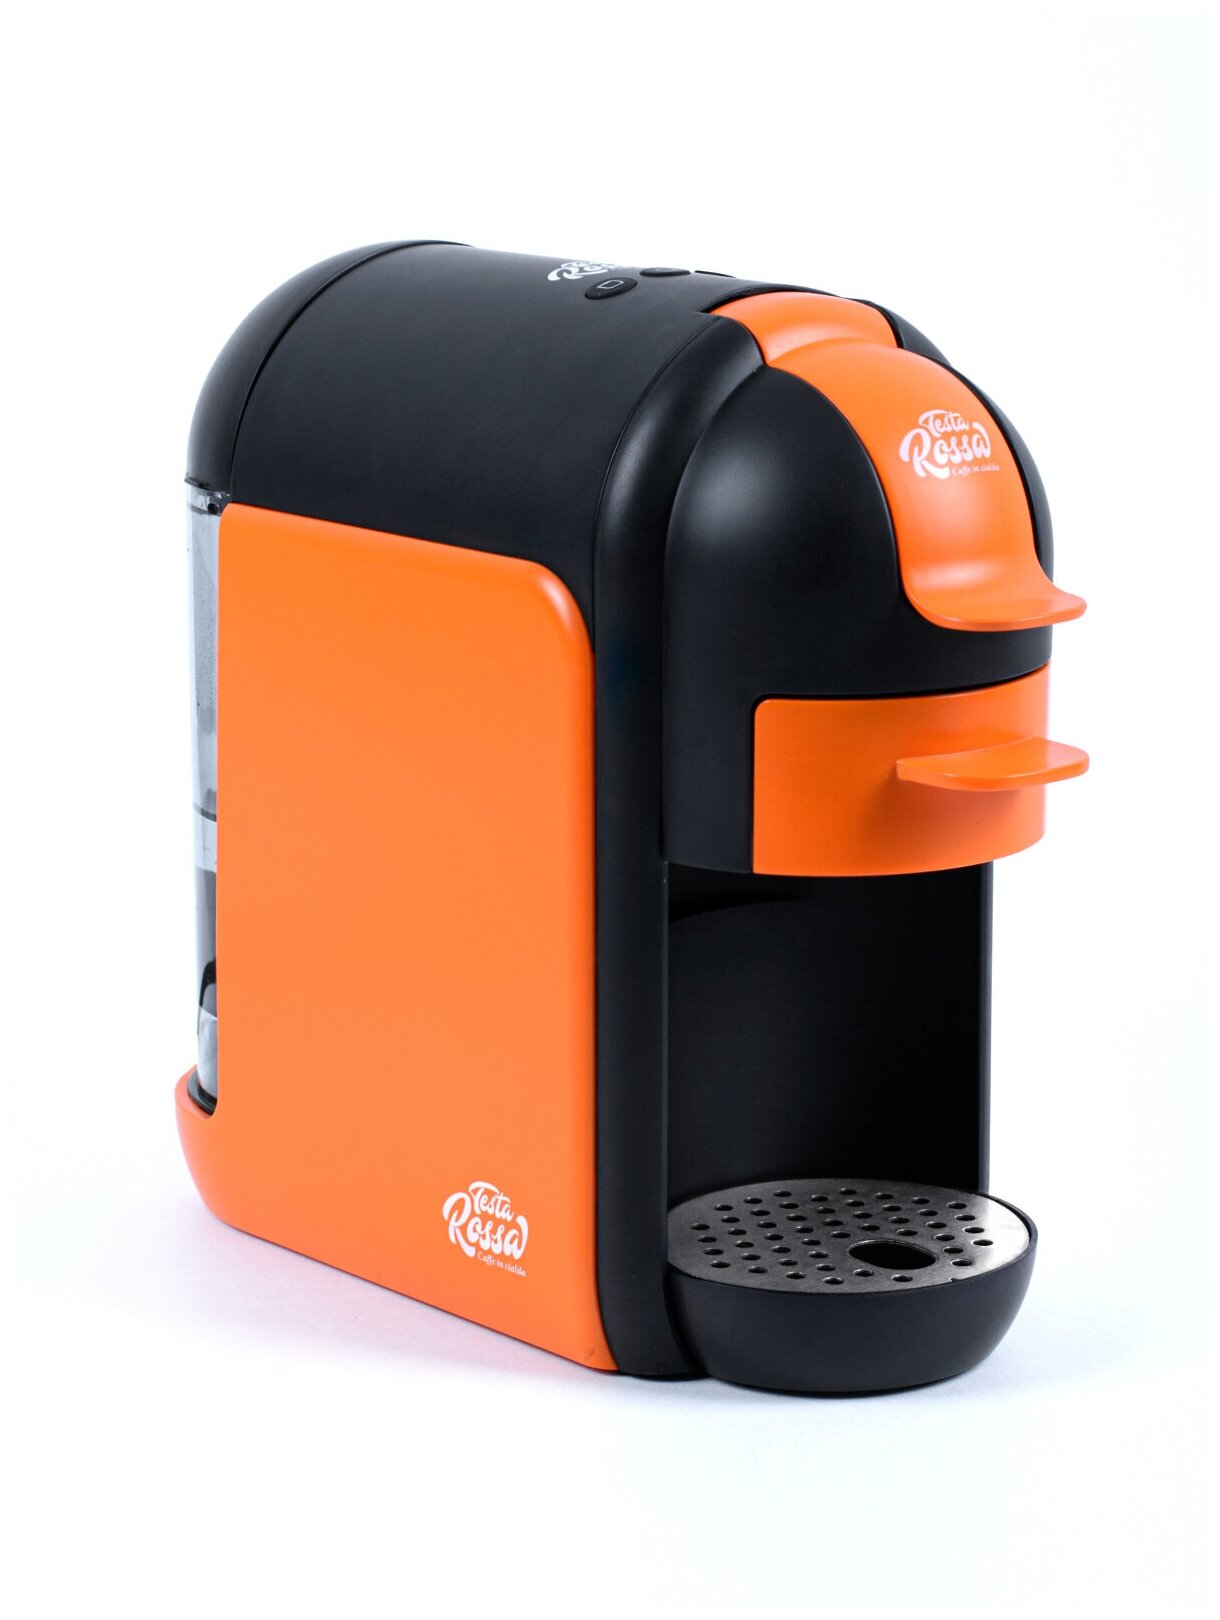 Кофеварка чалдовая Testa Rossa model 6890, 0,6 л, 1350 Вт, чалды 70 мм, оранжевый/черный - фотография № 1